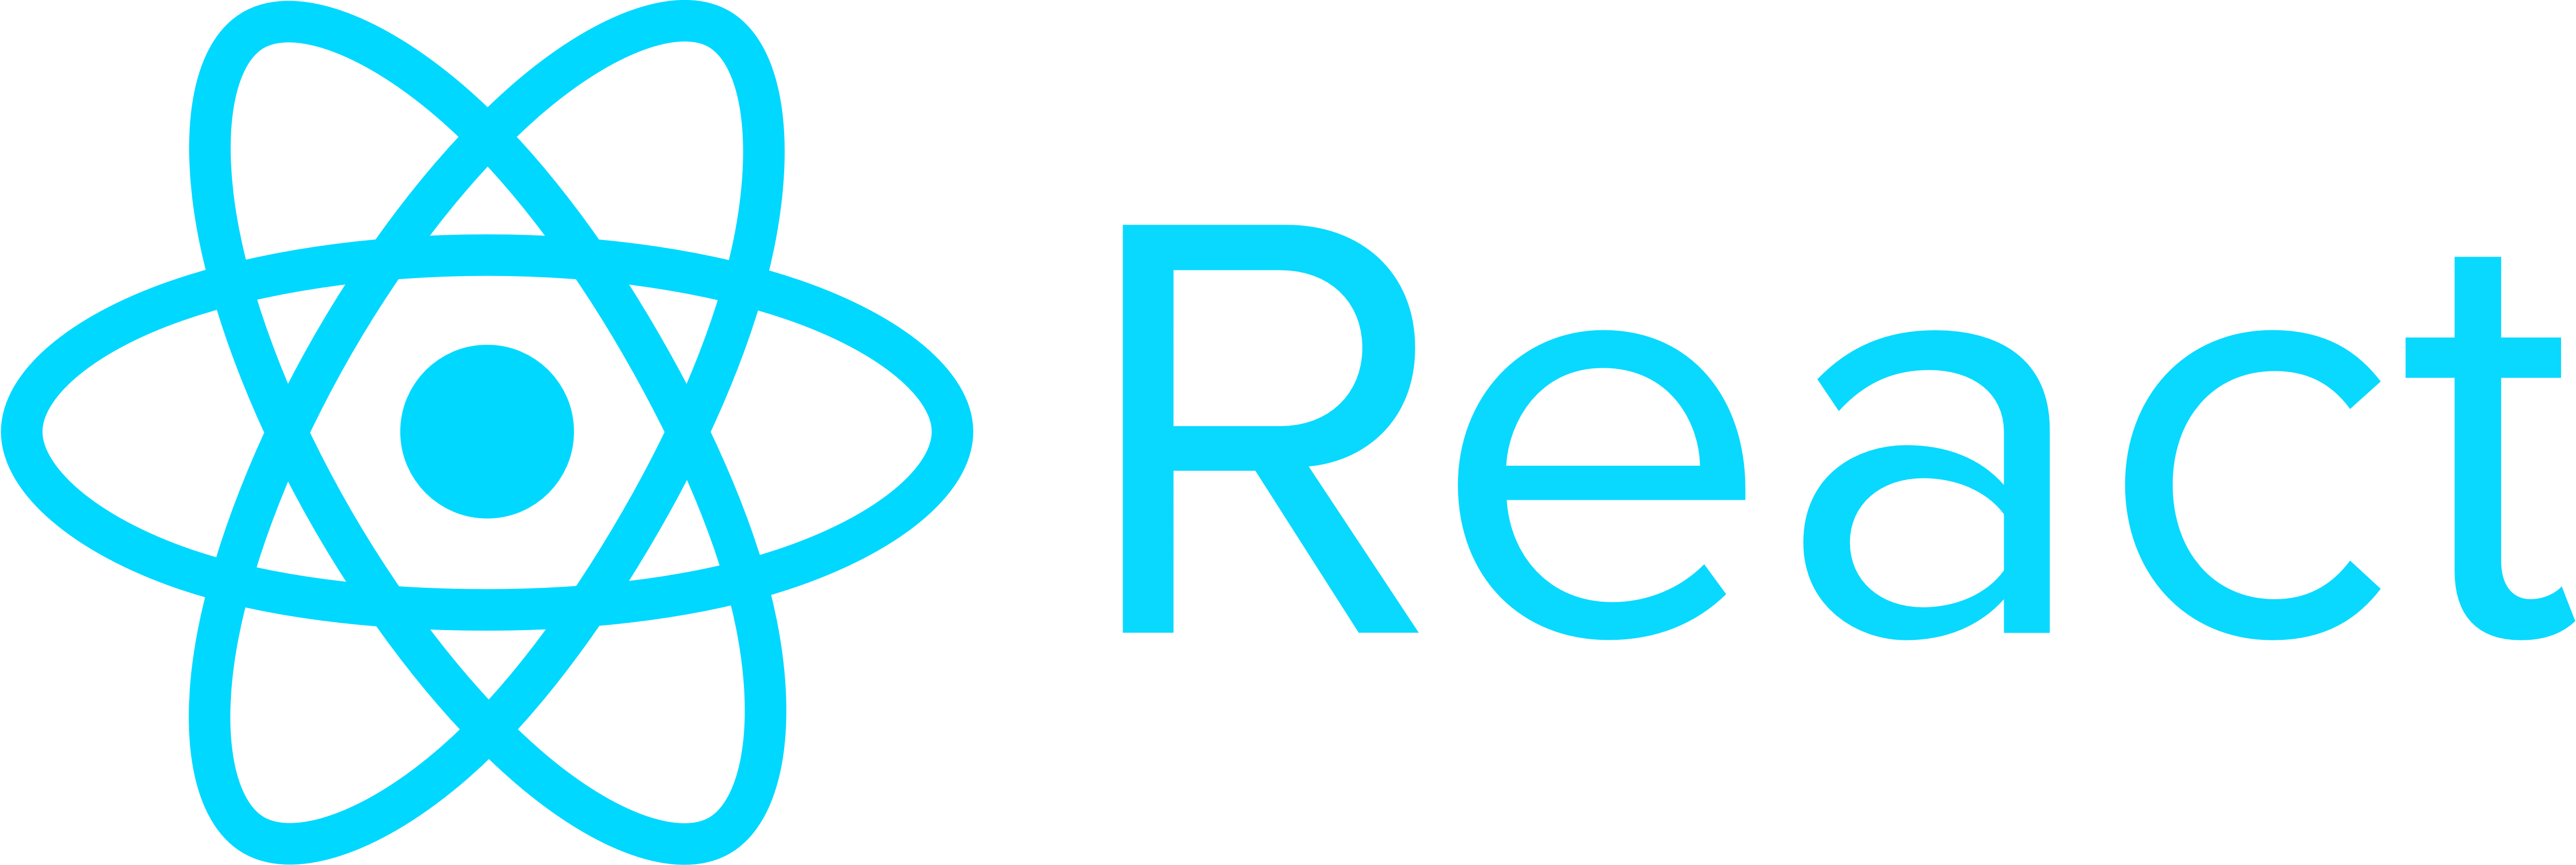 react-logo-transparent.png